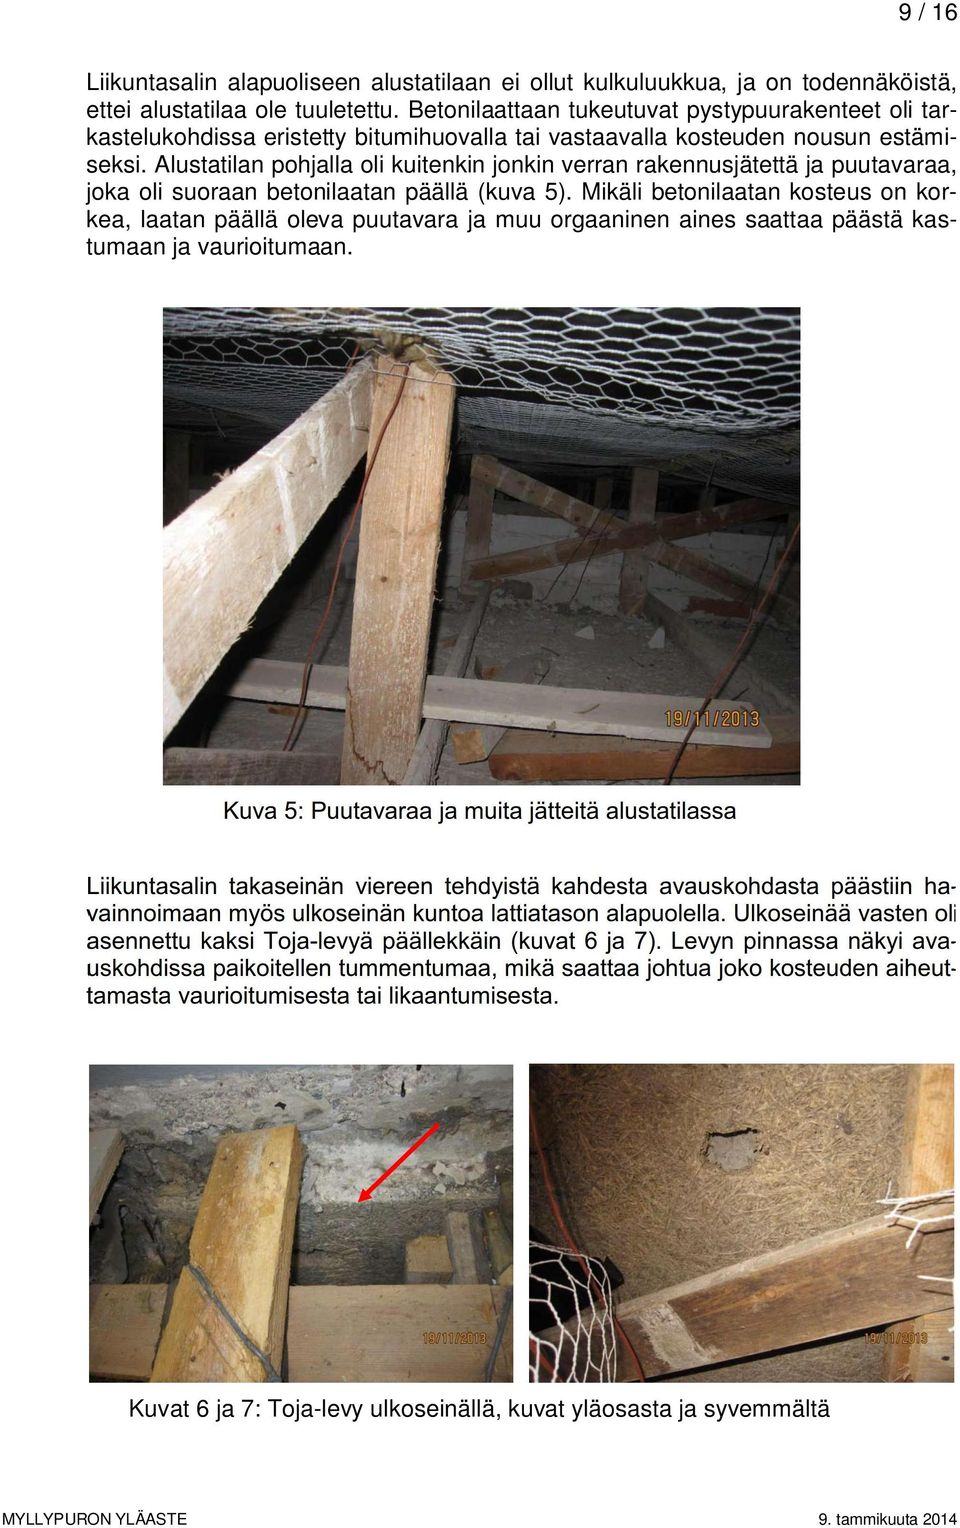 Alustatilan pohjalla oli kuitenkin jonkin verran rakennusjätettä ja puutavaraa, joka oli suoraan betonilaatan päällä (kuva 5).